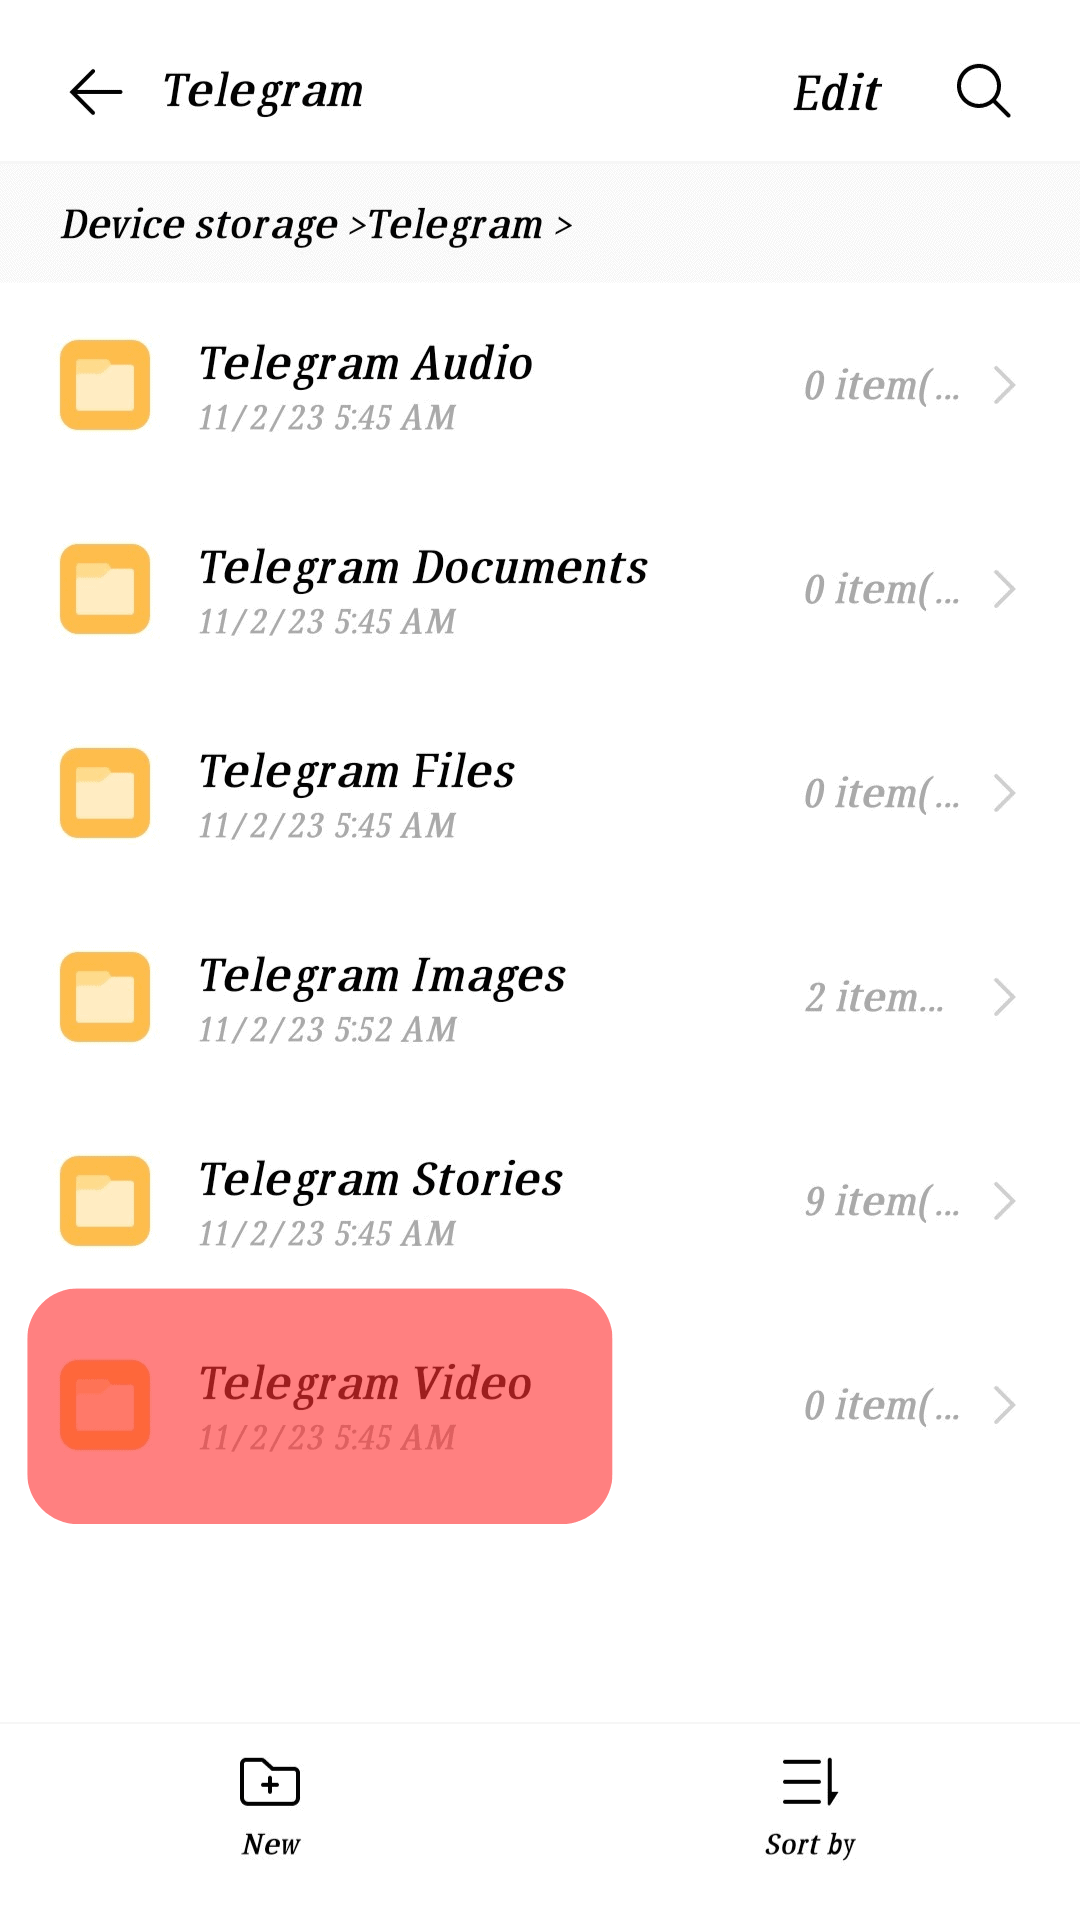 Open The Telegram Video Folder